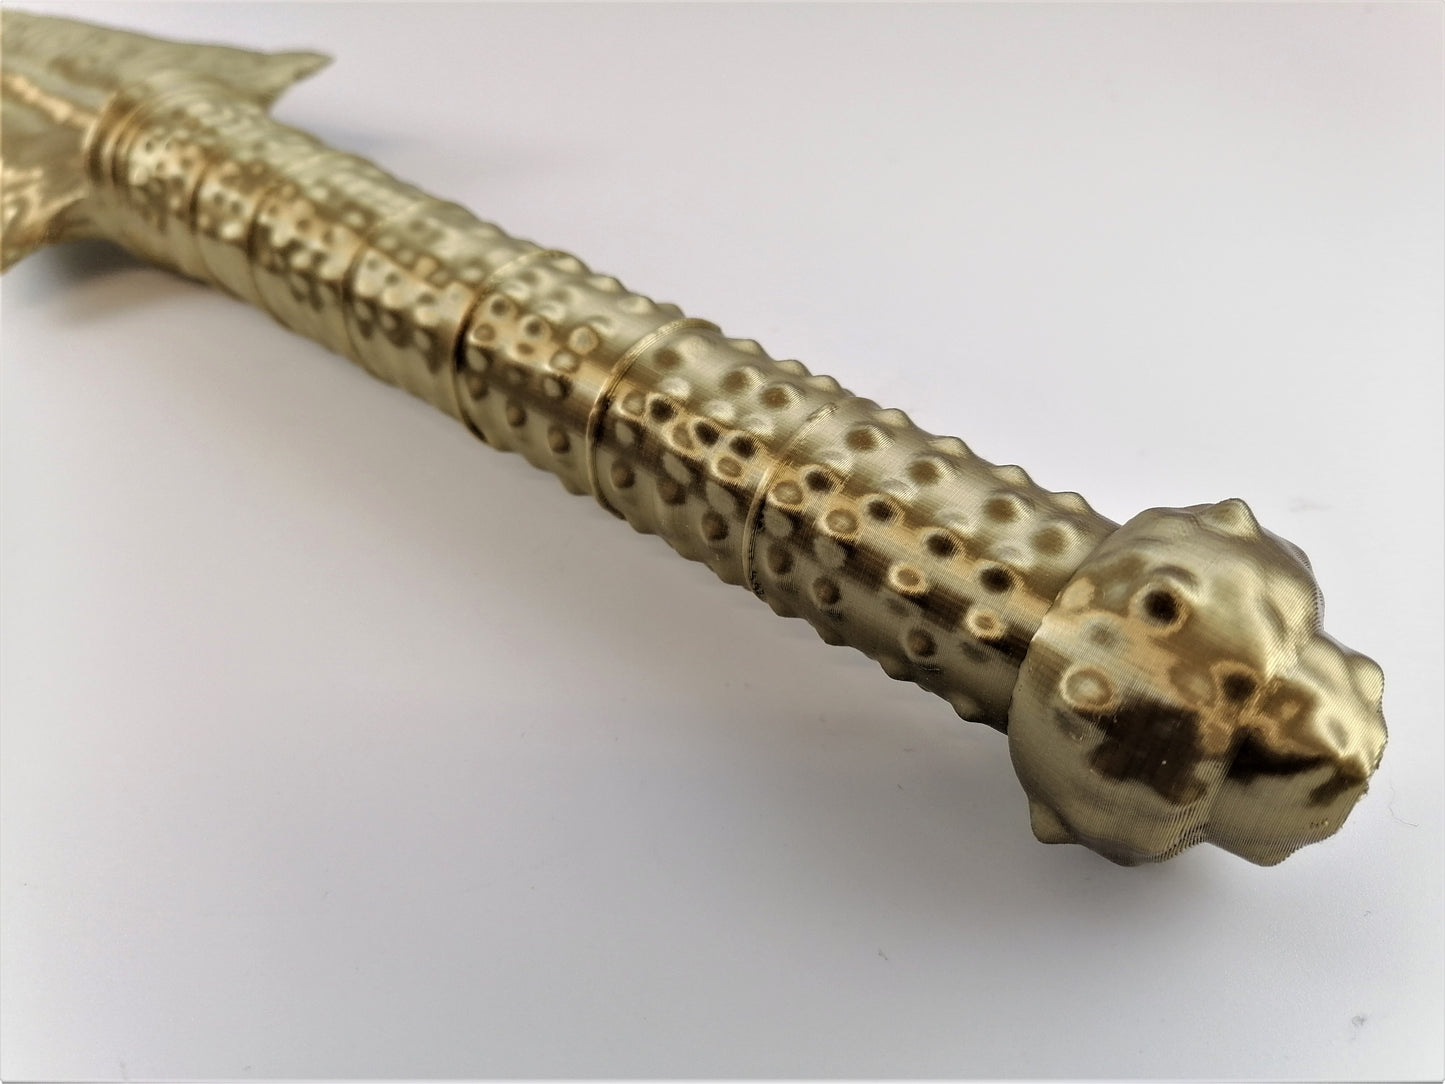 CEREMONIAL DAGGER Museum Artifact - 3D Printed Replica